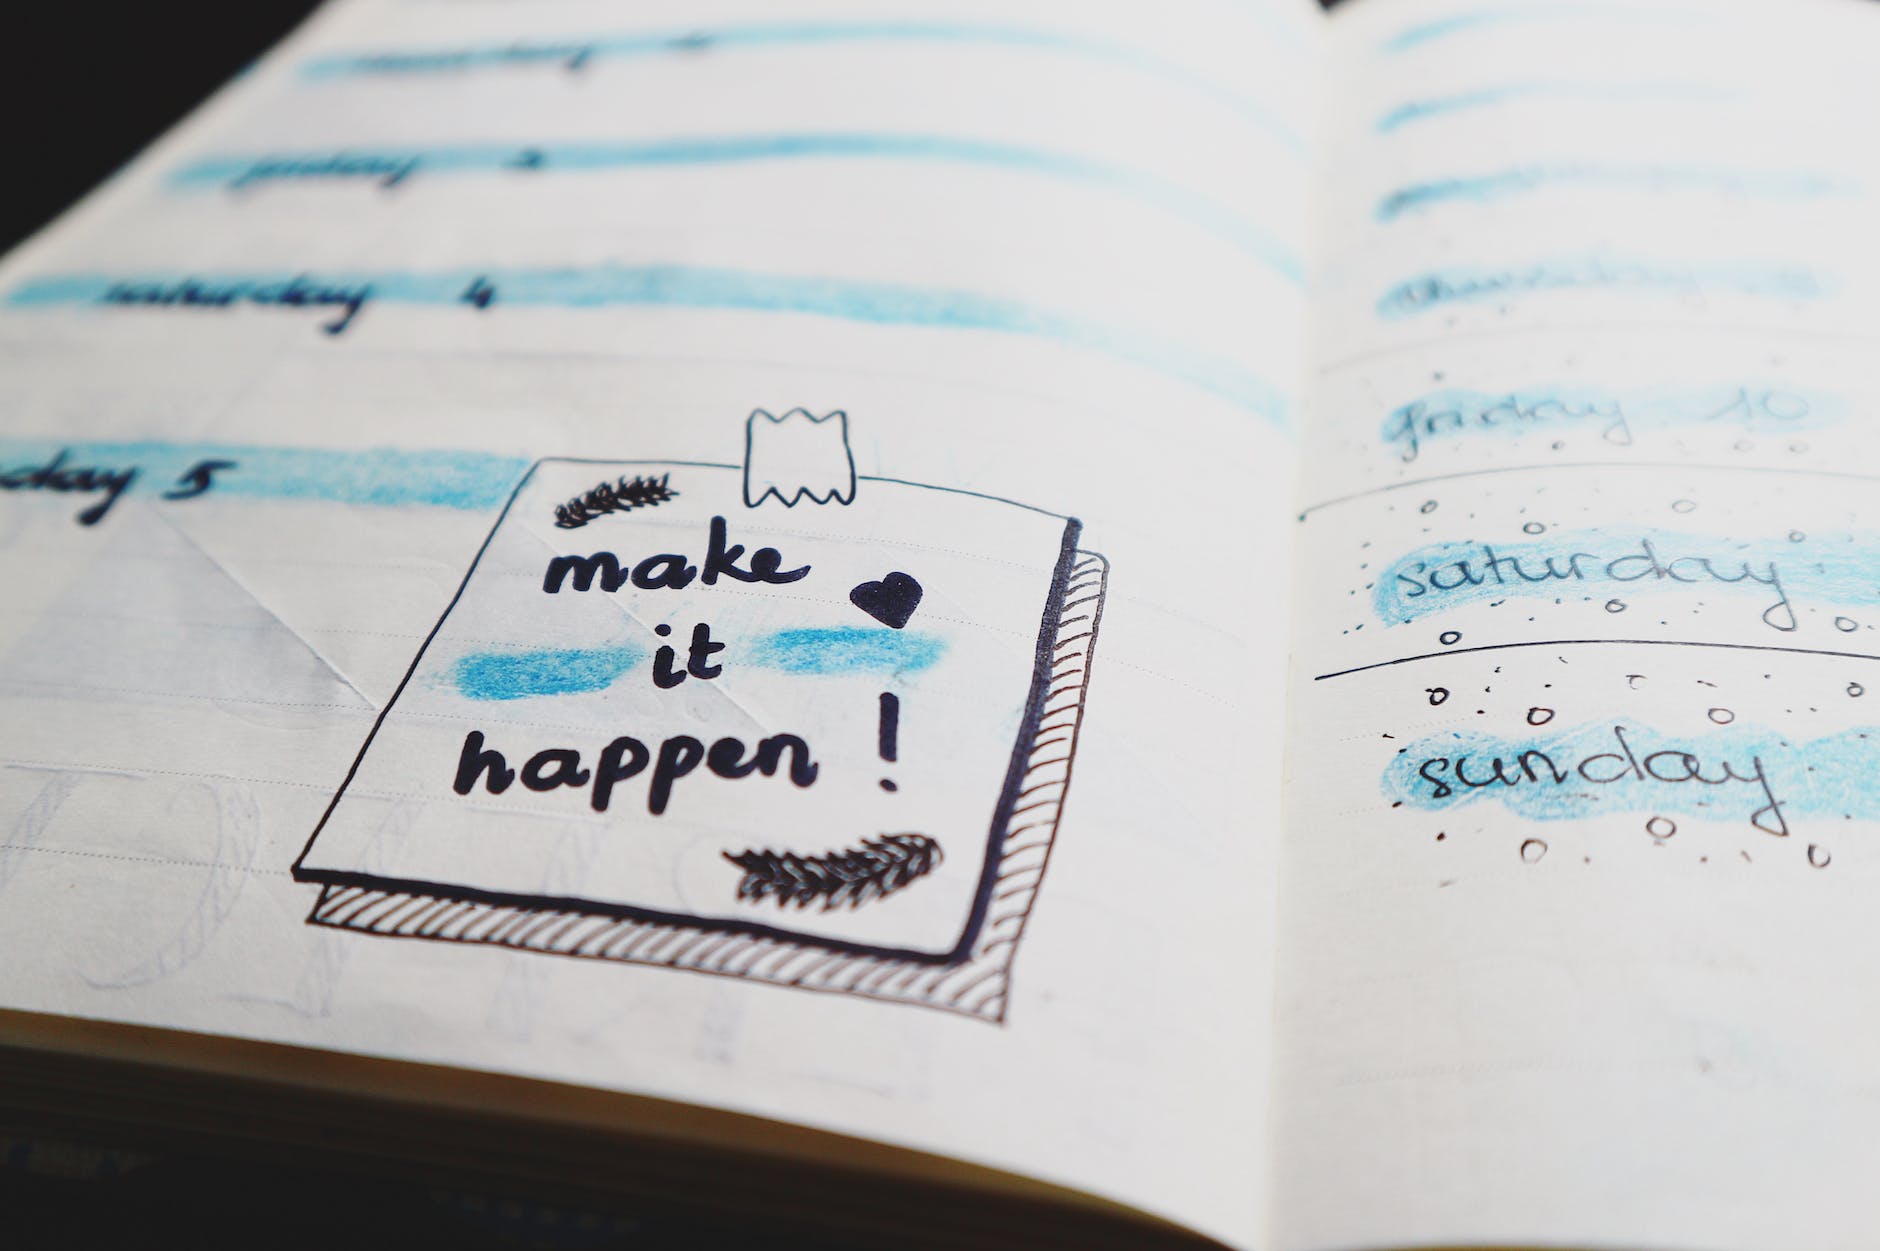 Handwritten note in an open notebook saying "make it happen"